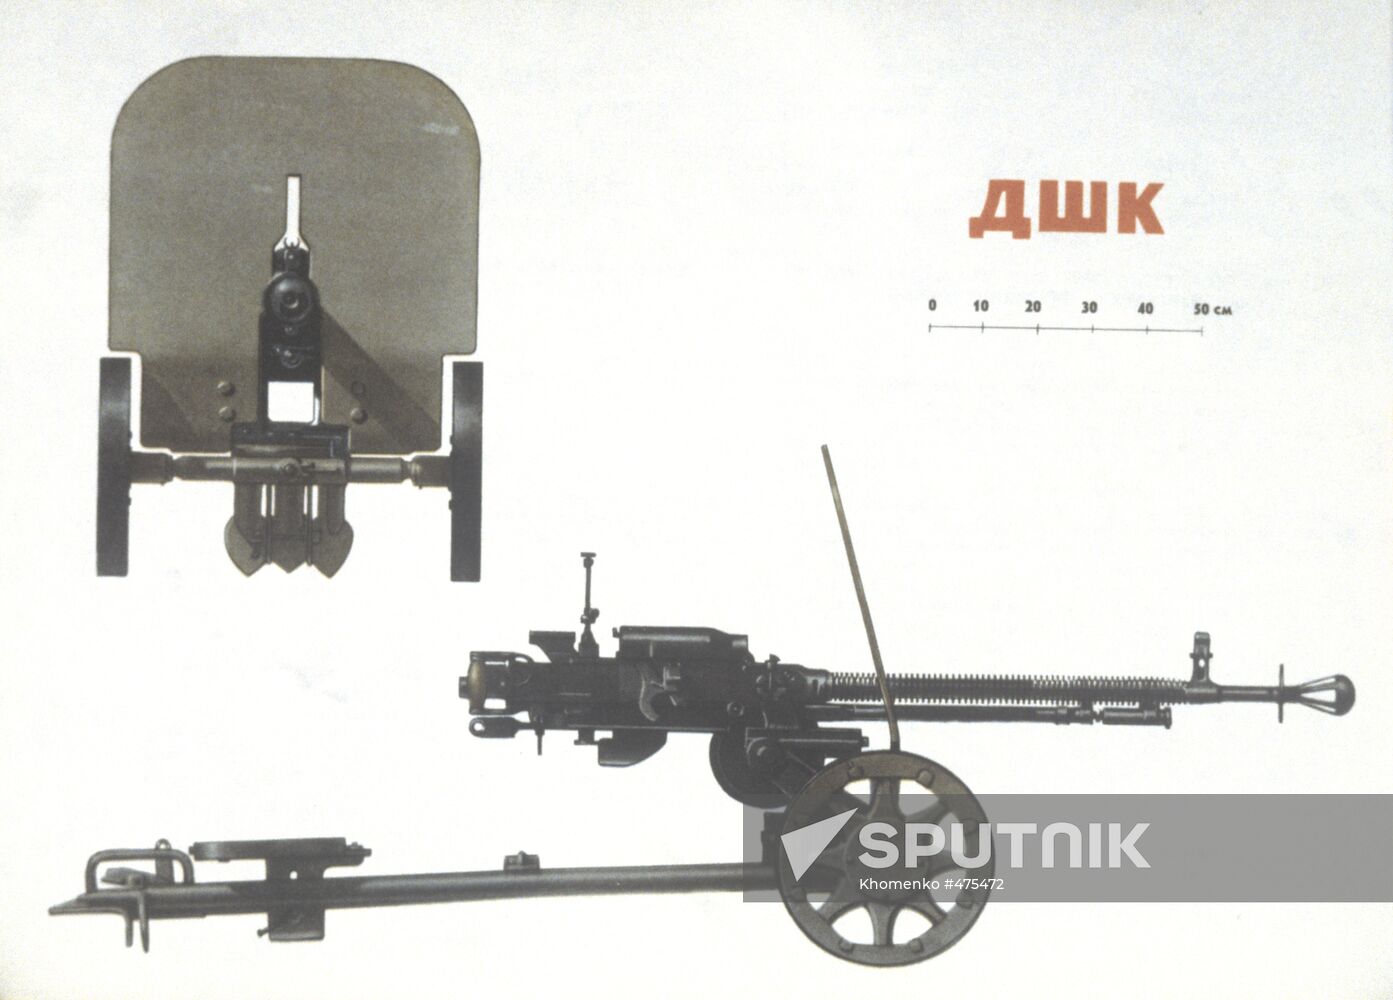 DSHK 12.7-mm machine gun